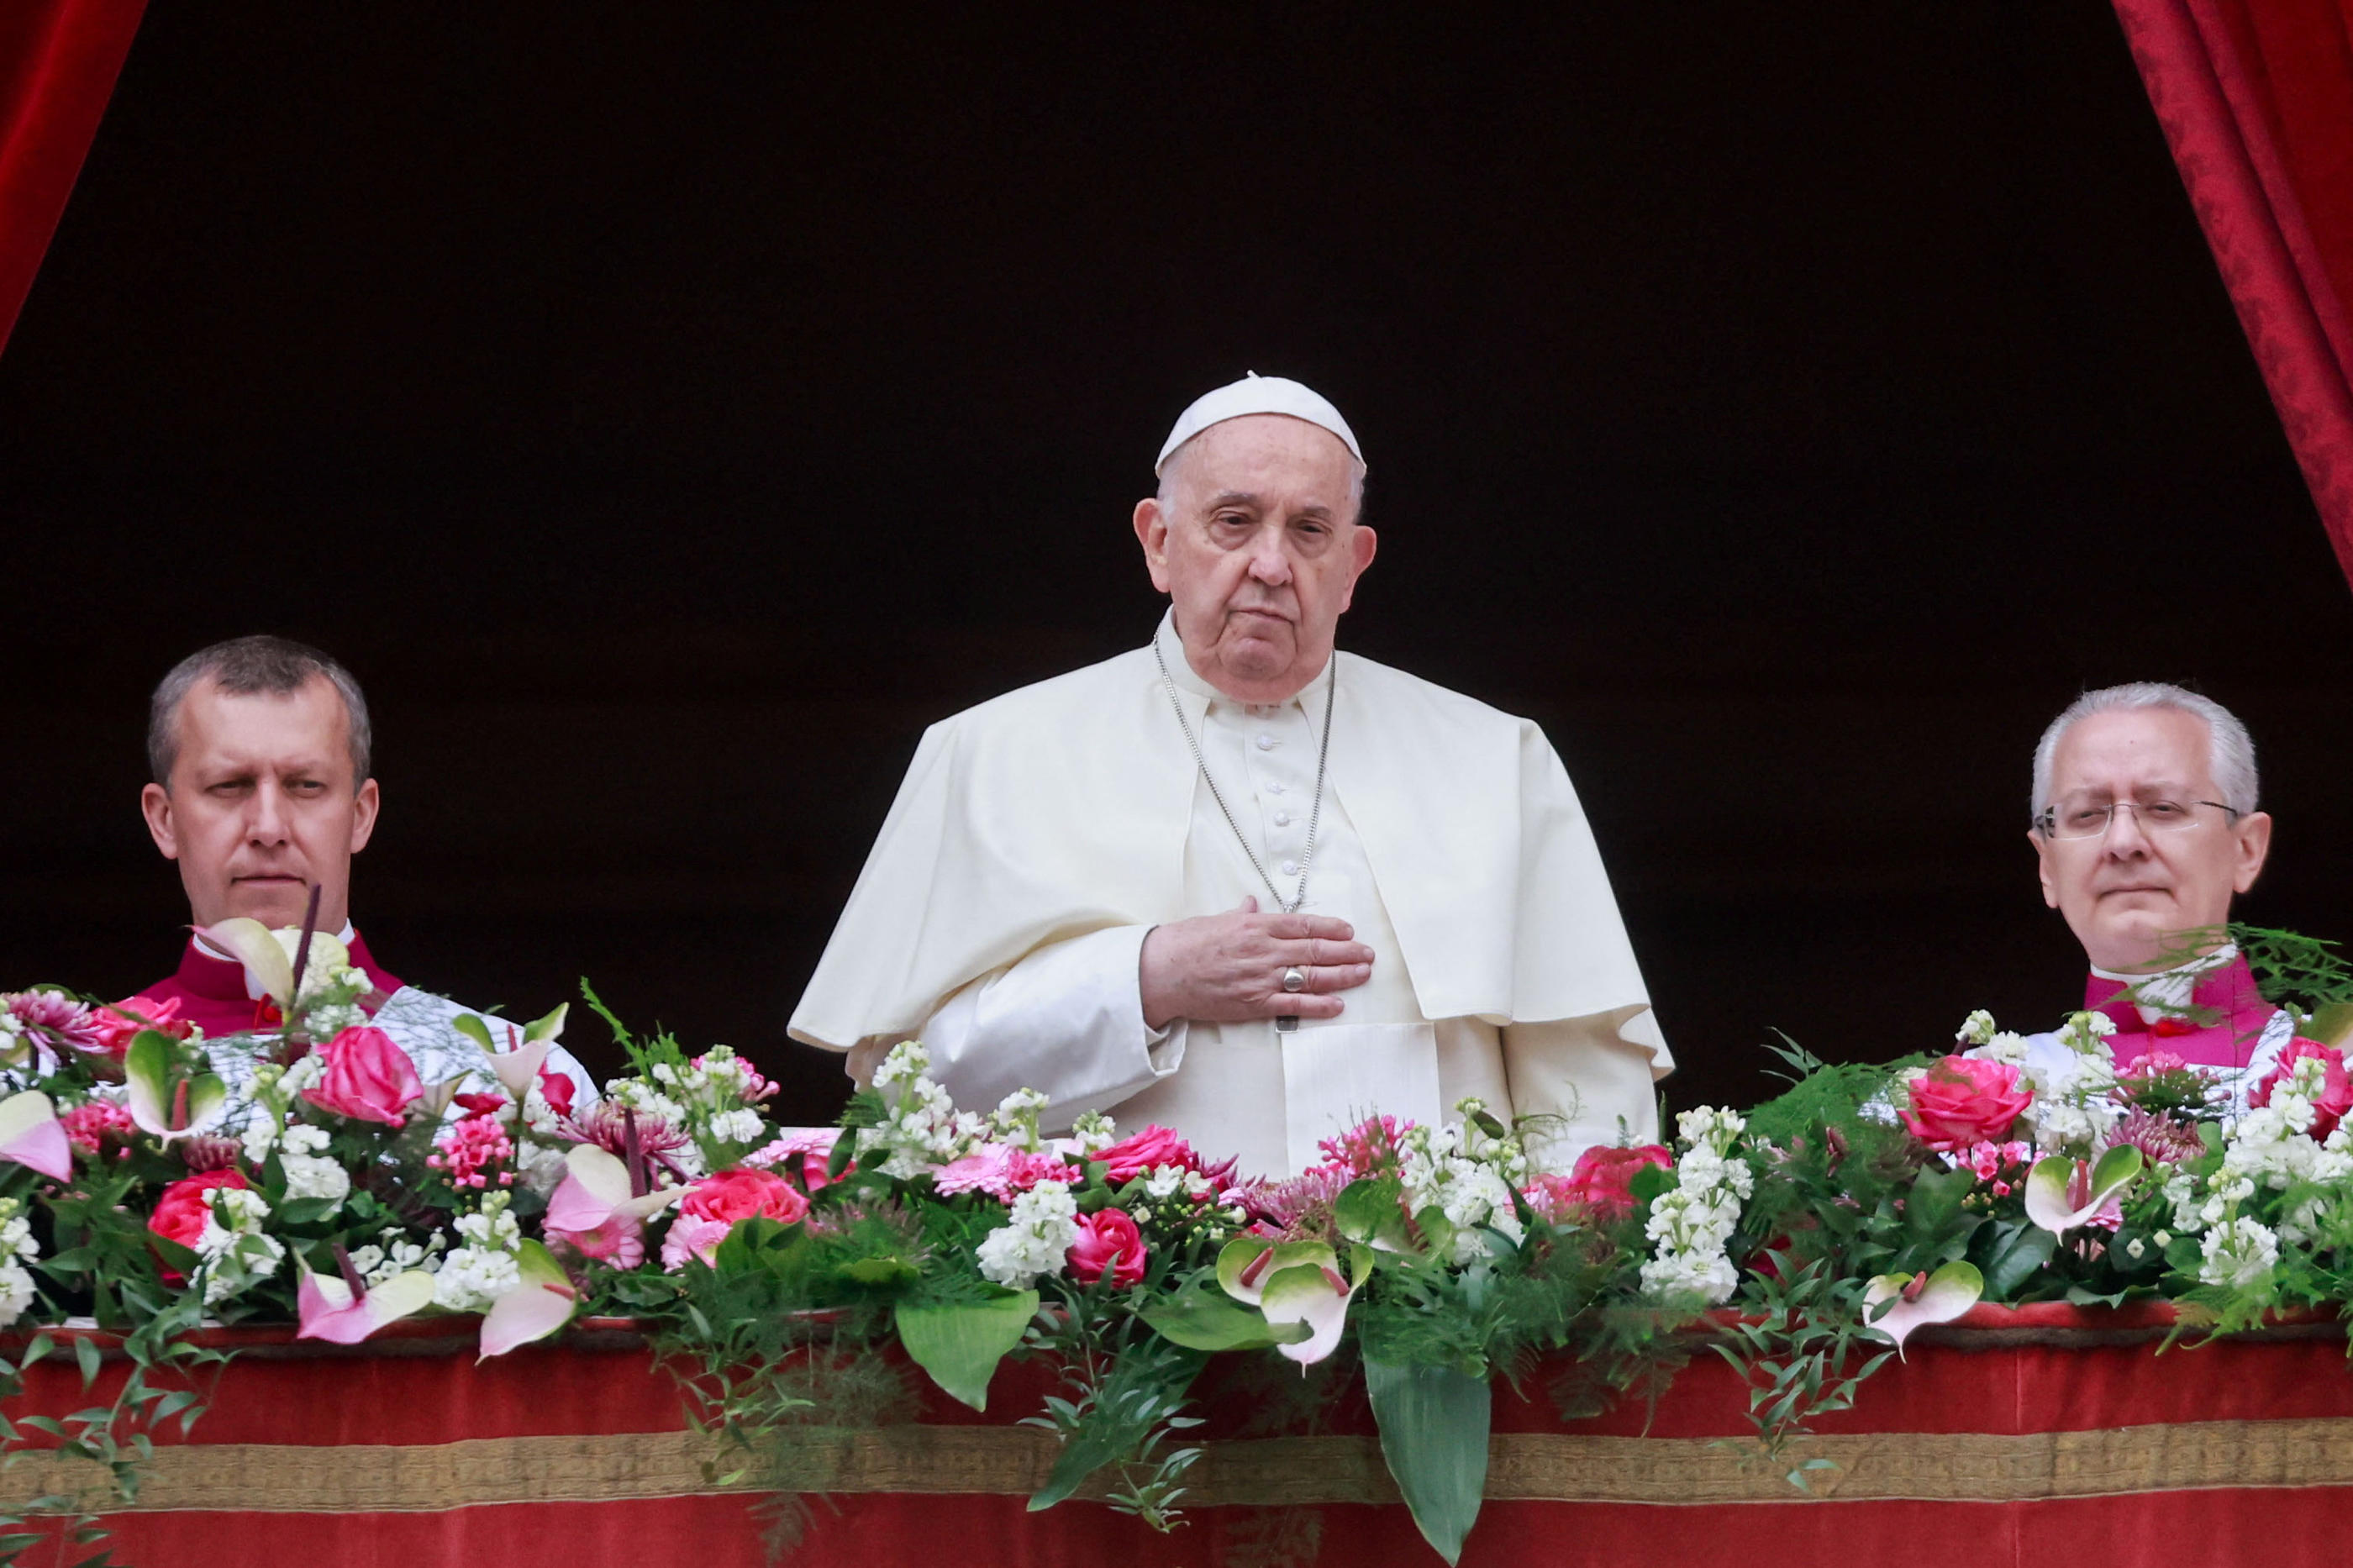 Le Pape François a délivré son message "à la ville et au monde" depuis le balcon de la basilique Saint-Pierre, au Vatican. REUTERS/Yara Nardi